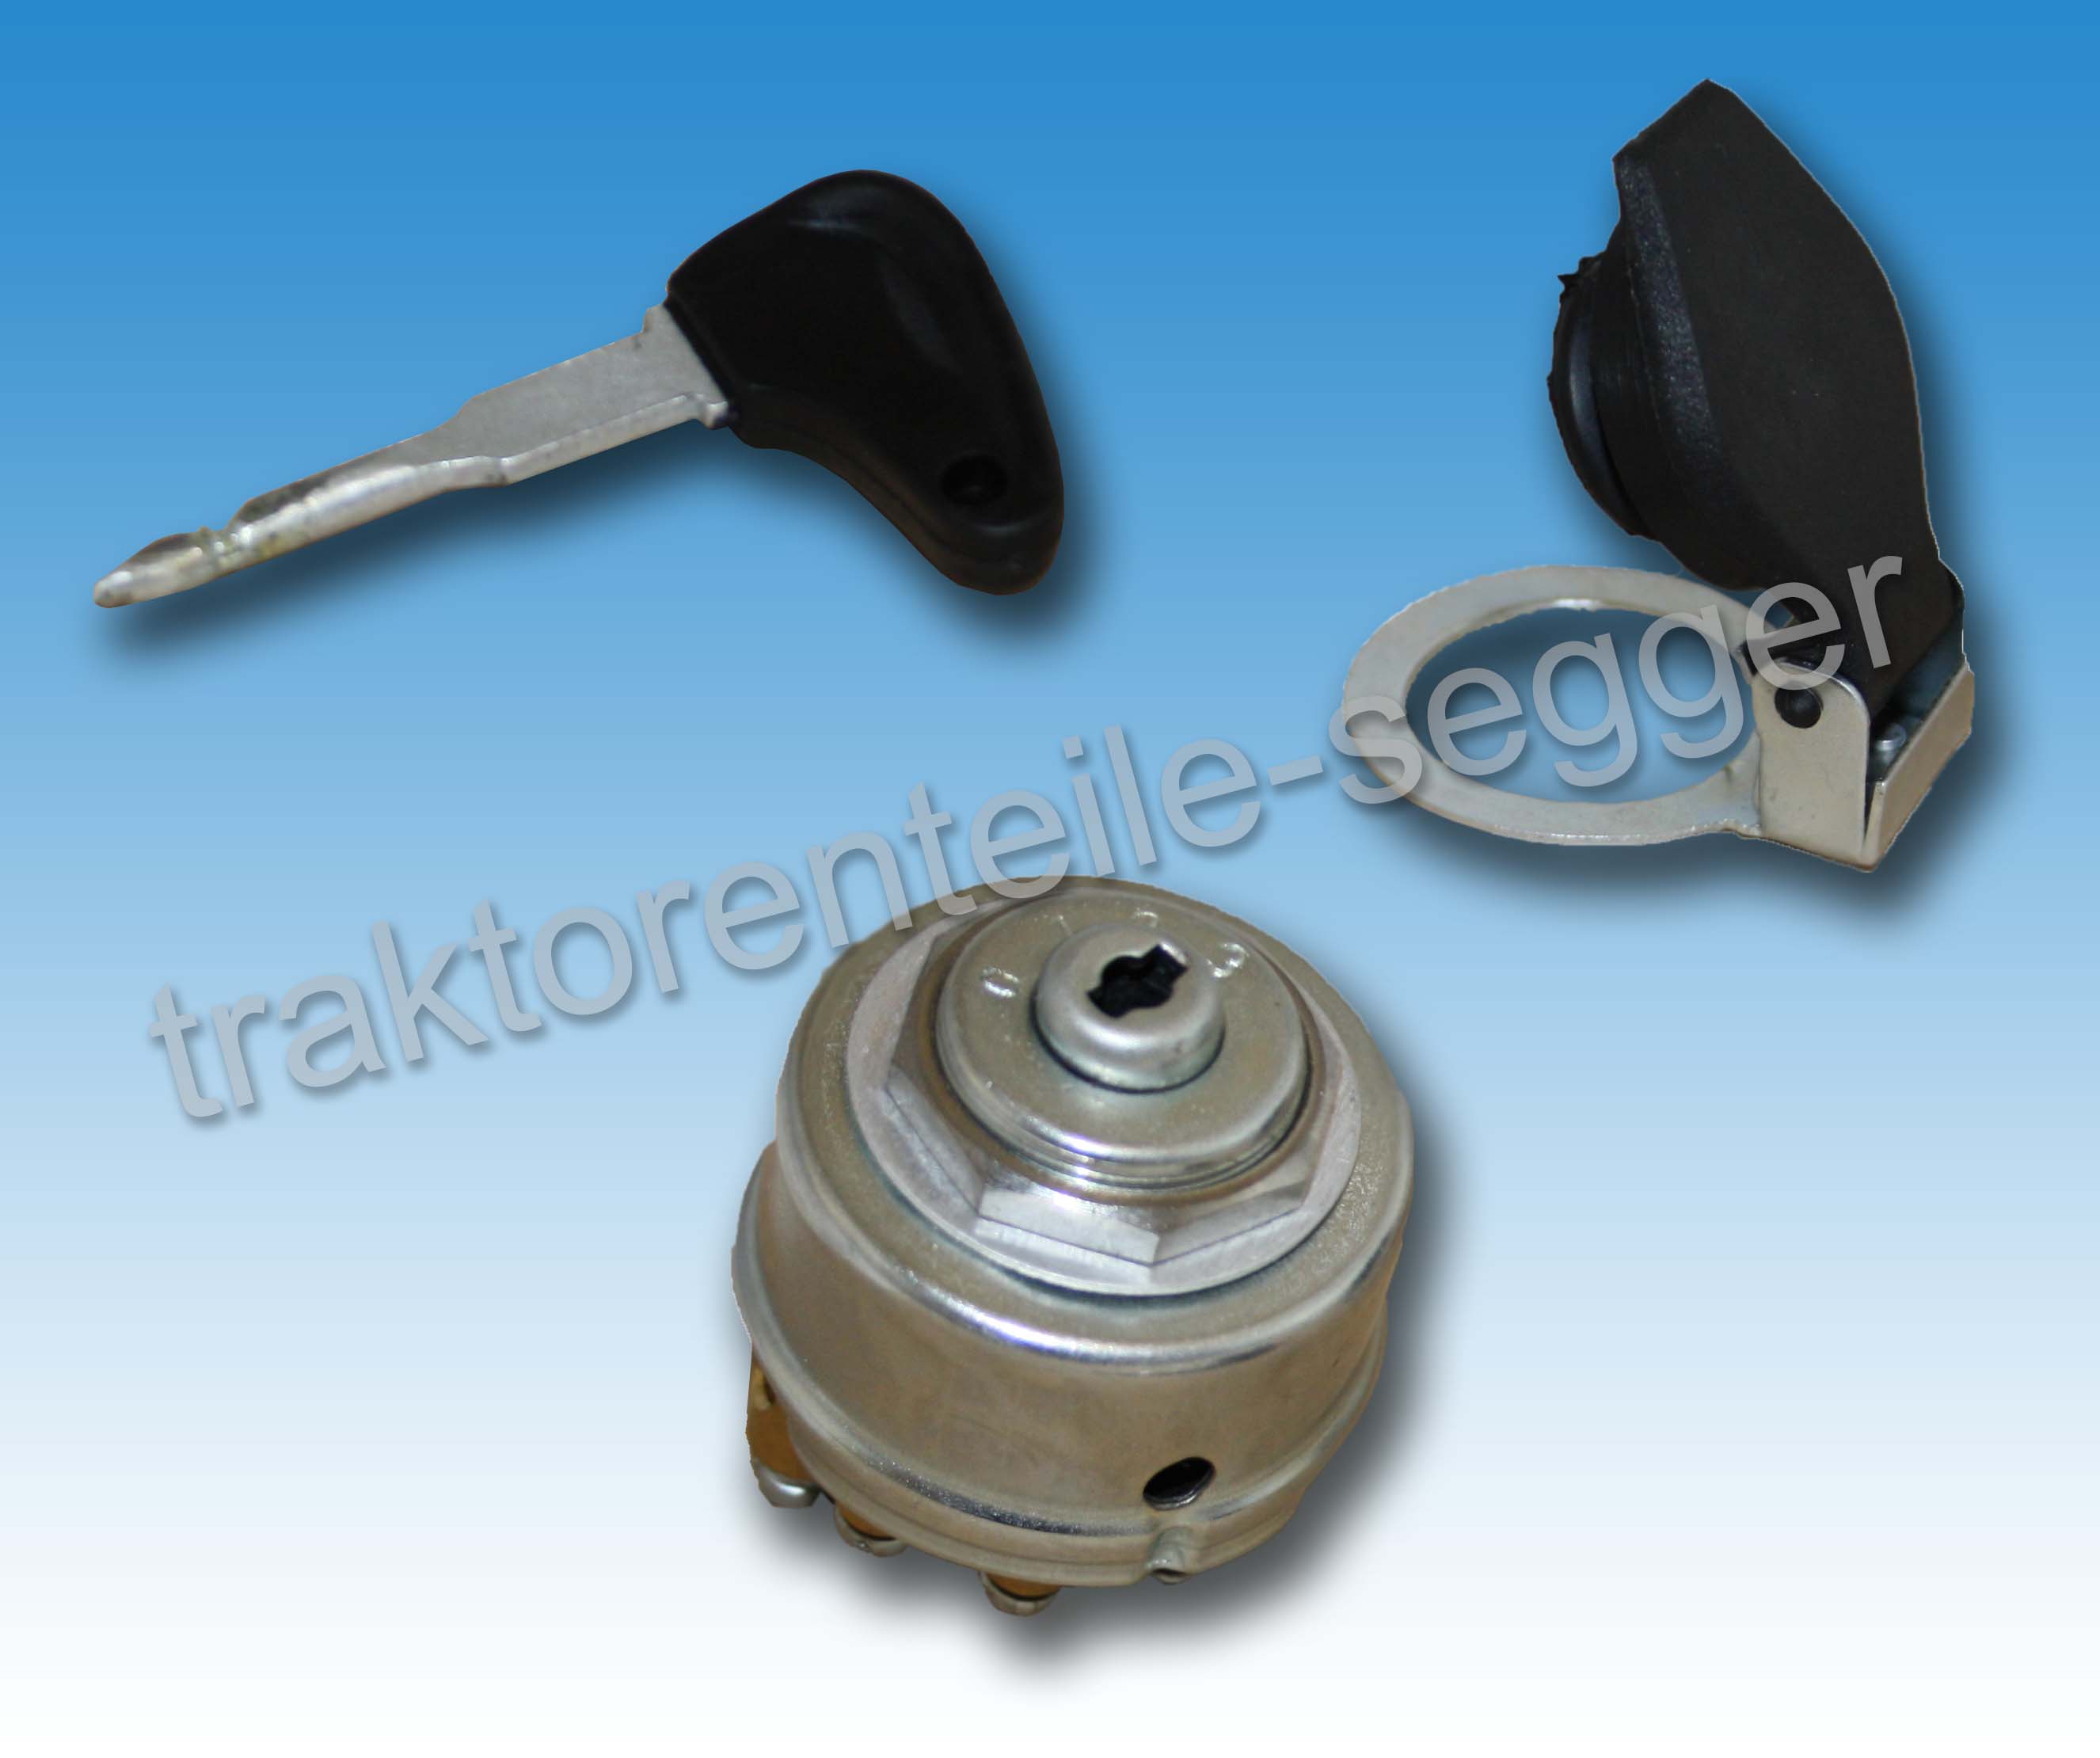 Traktorenteile Segger - Zündschloss 0123 kpl. mit Zündschlüssel und  Schutzdeckel